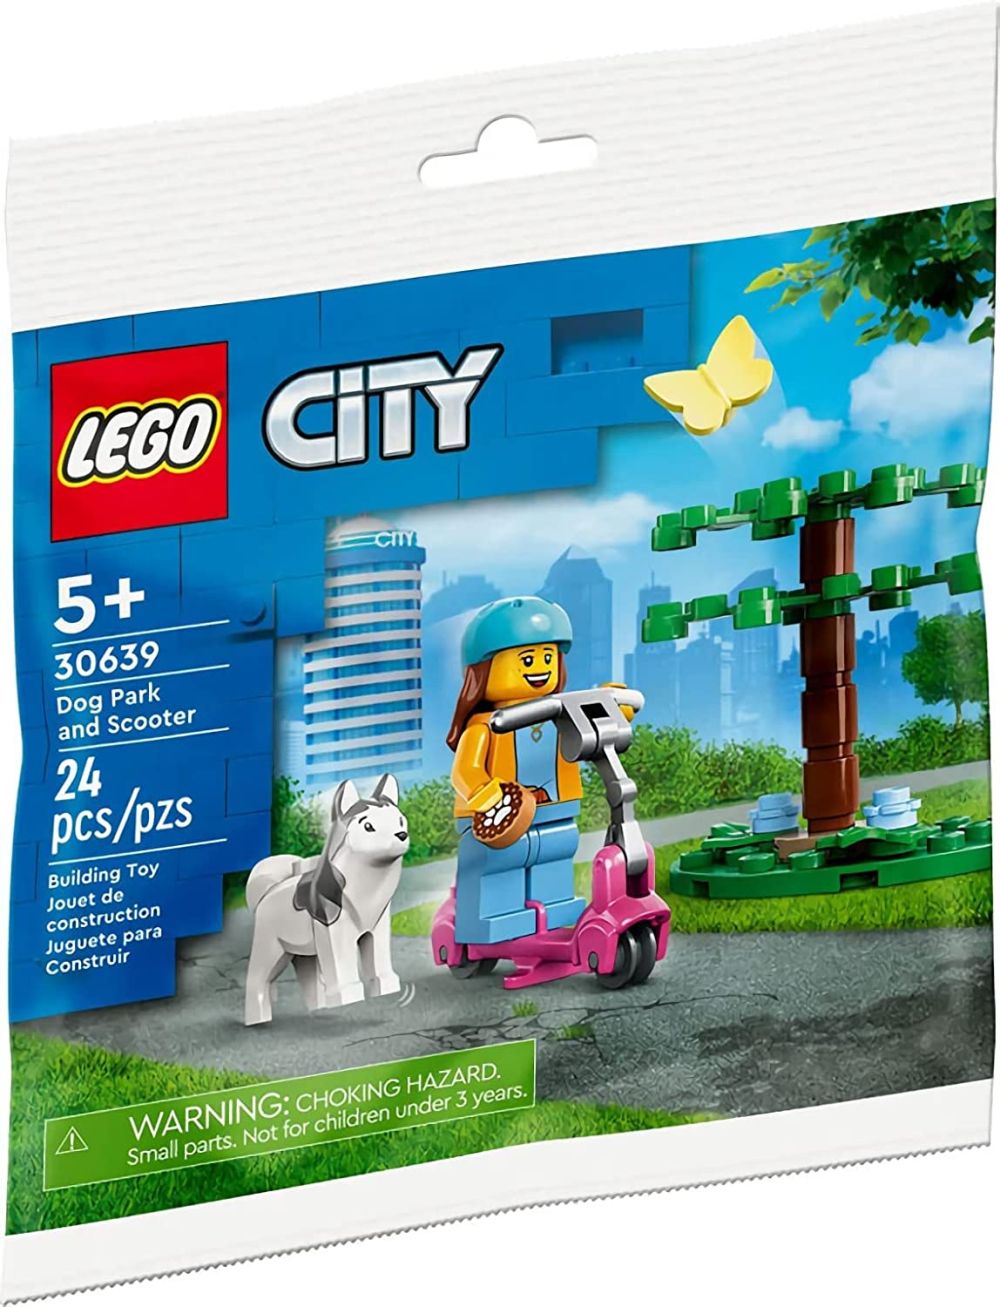 LEGO City 30639 pas cher, Balade en trottinette au parc pour